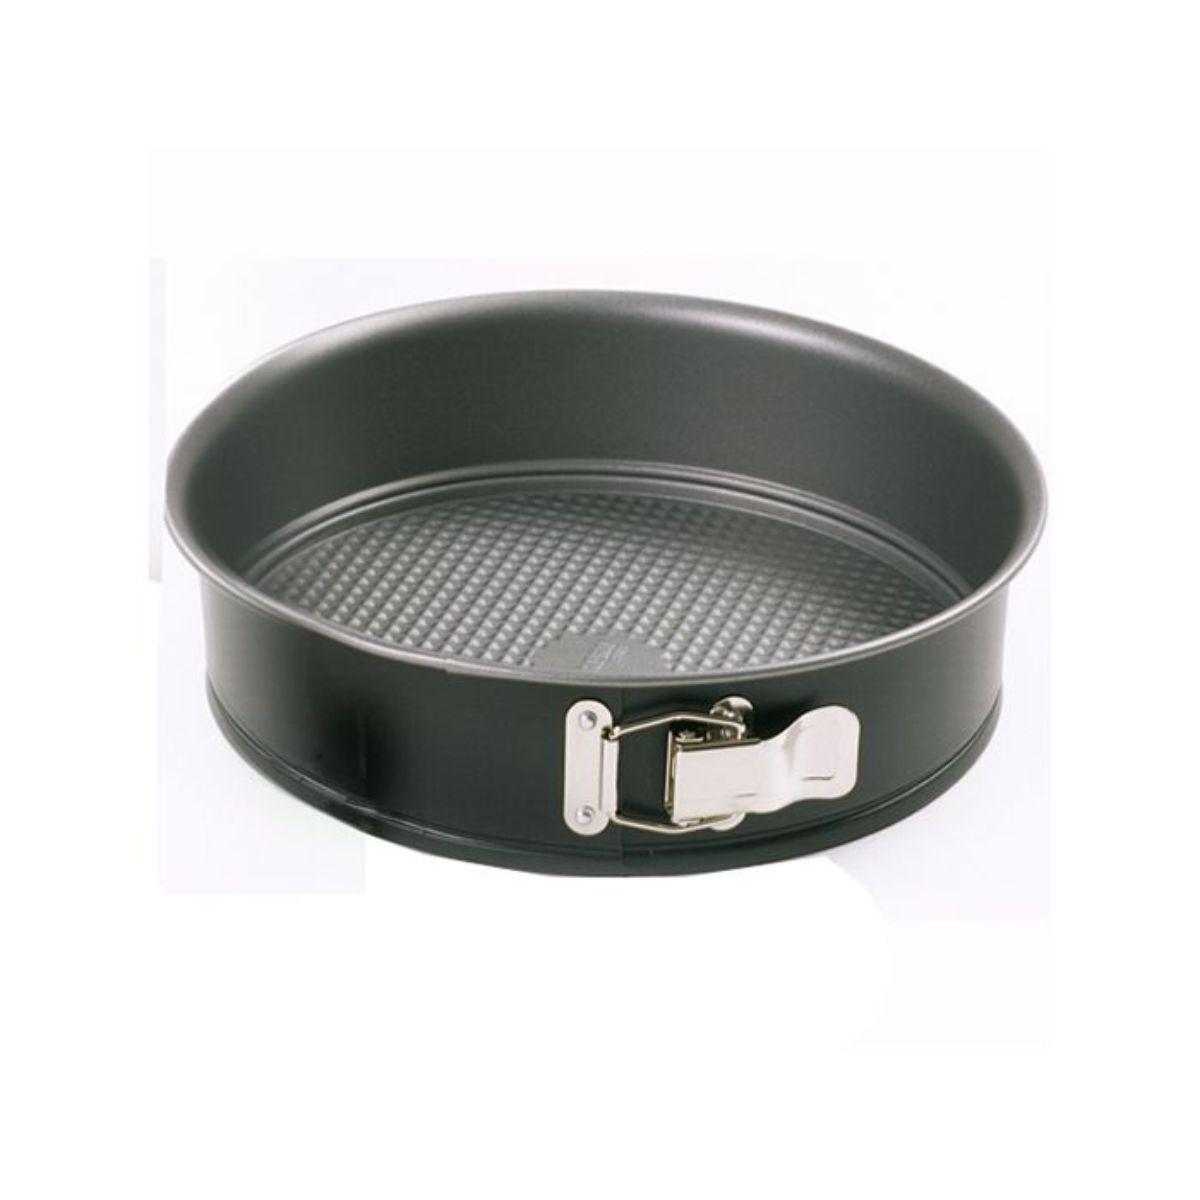 Norpro Stainless Steel 9 Round Cake Pan